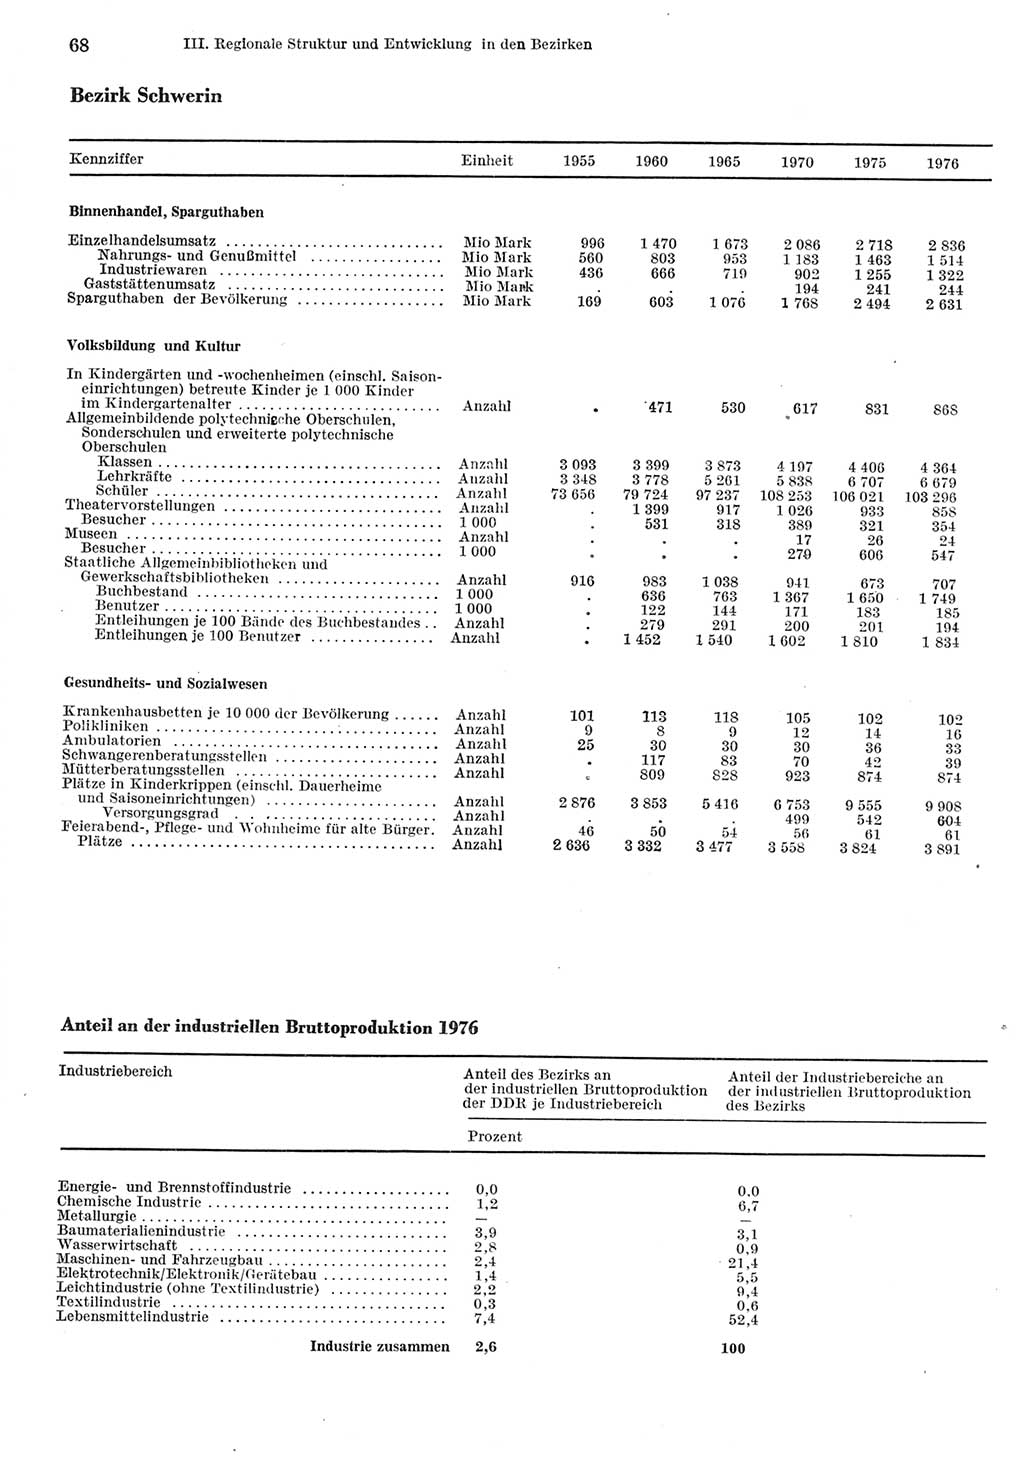 Statistisches Jahrbuch der Deutschen Demokratischen Republik (DDR) 1977, Seite 68 (Stat. Jb. DDR 1977, S. 68)